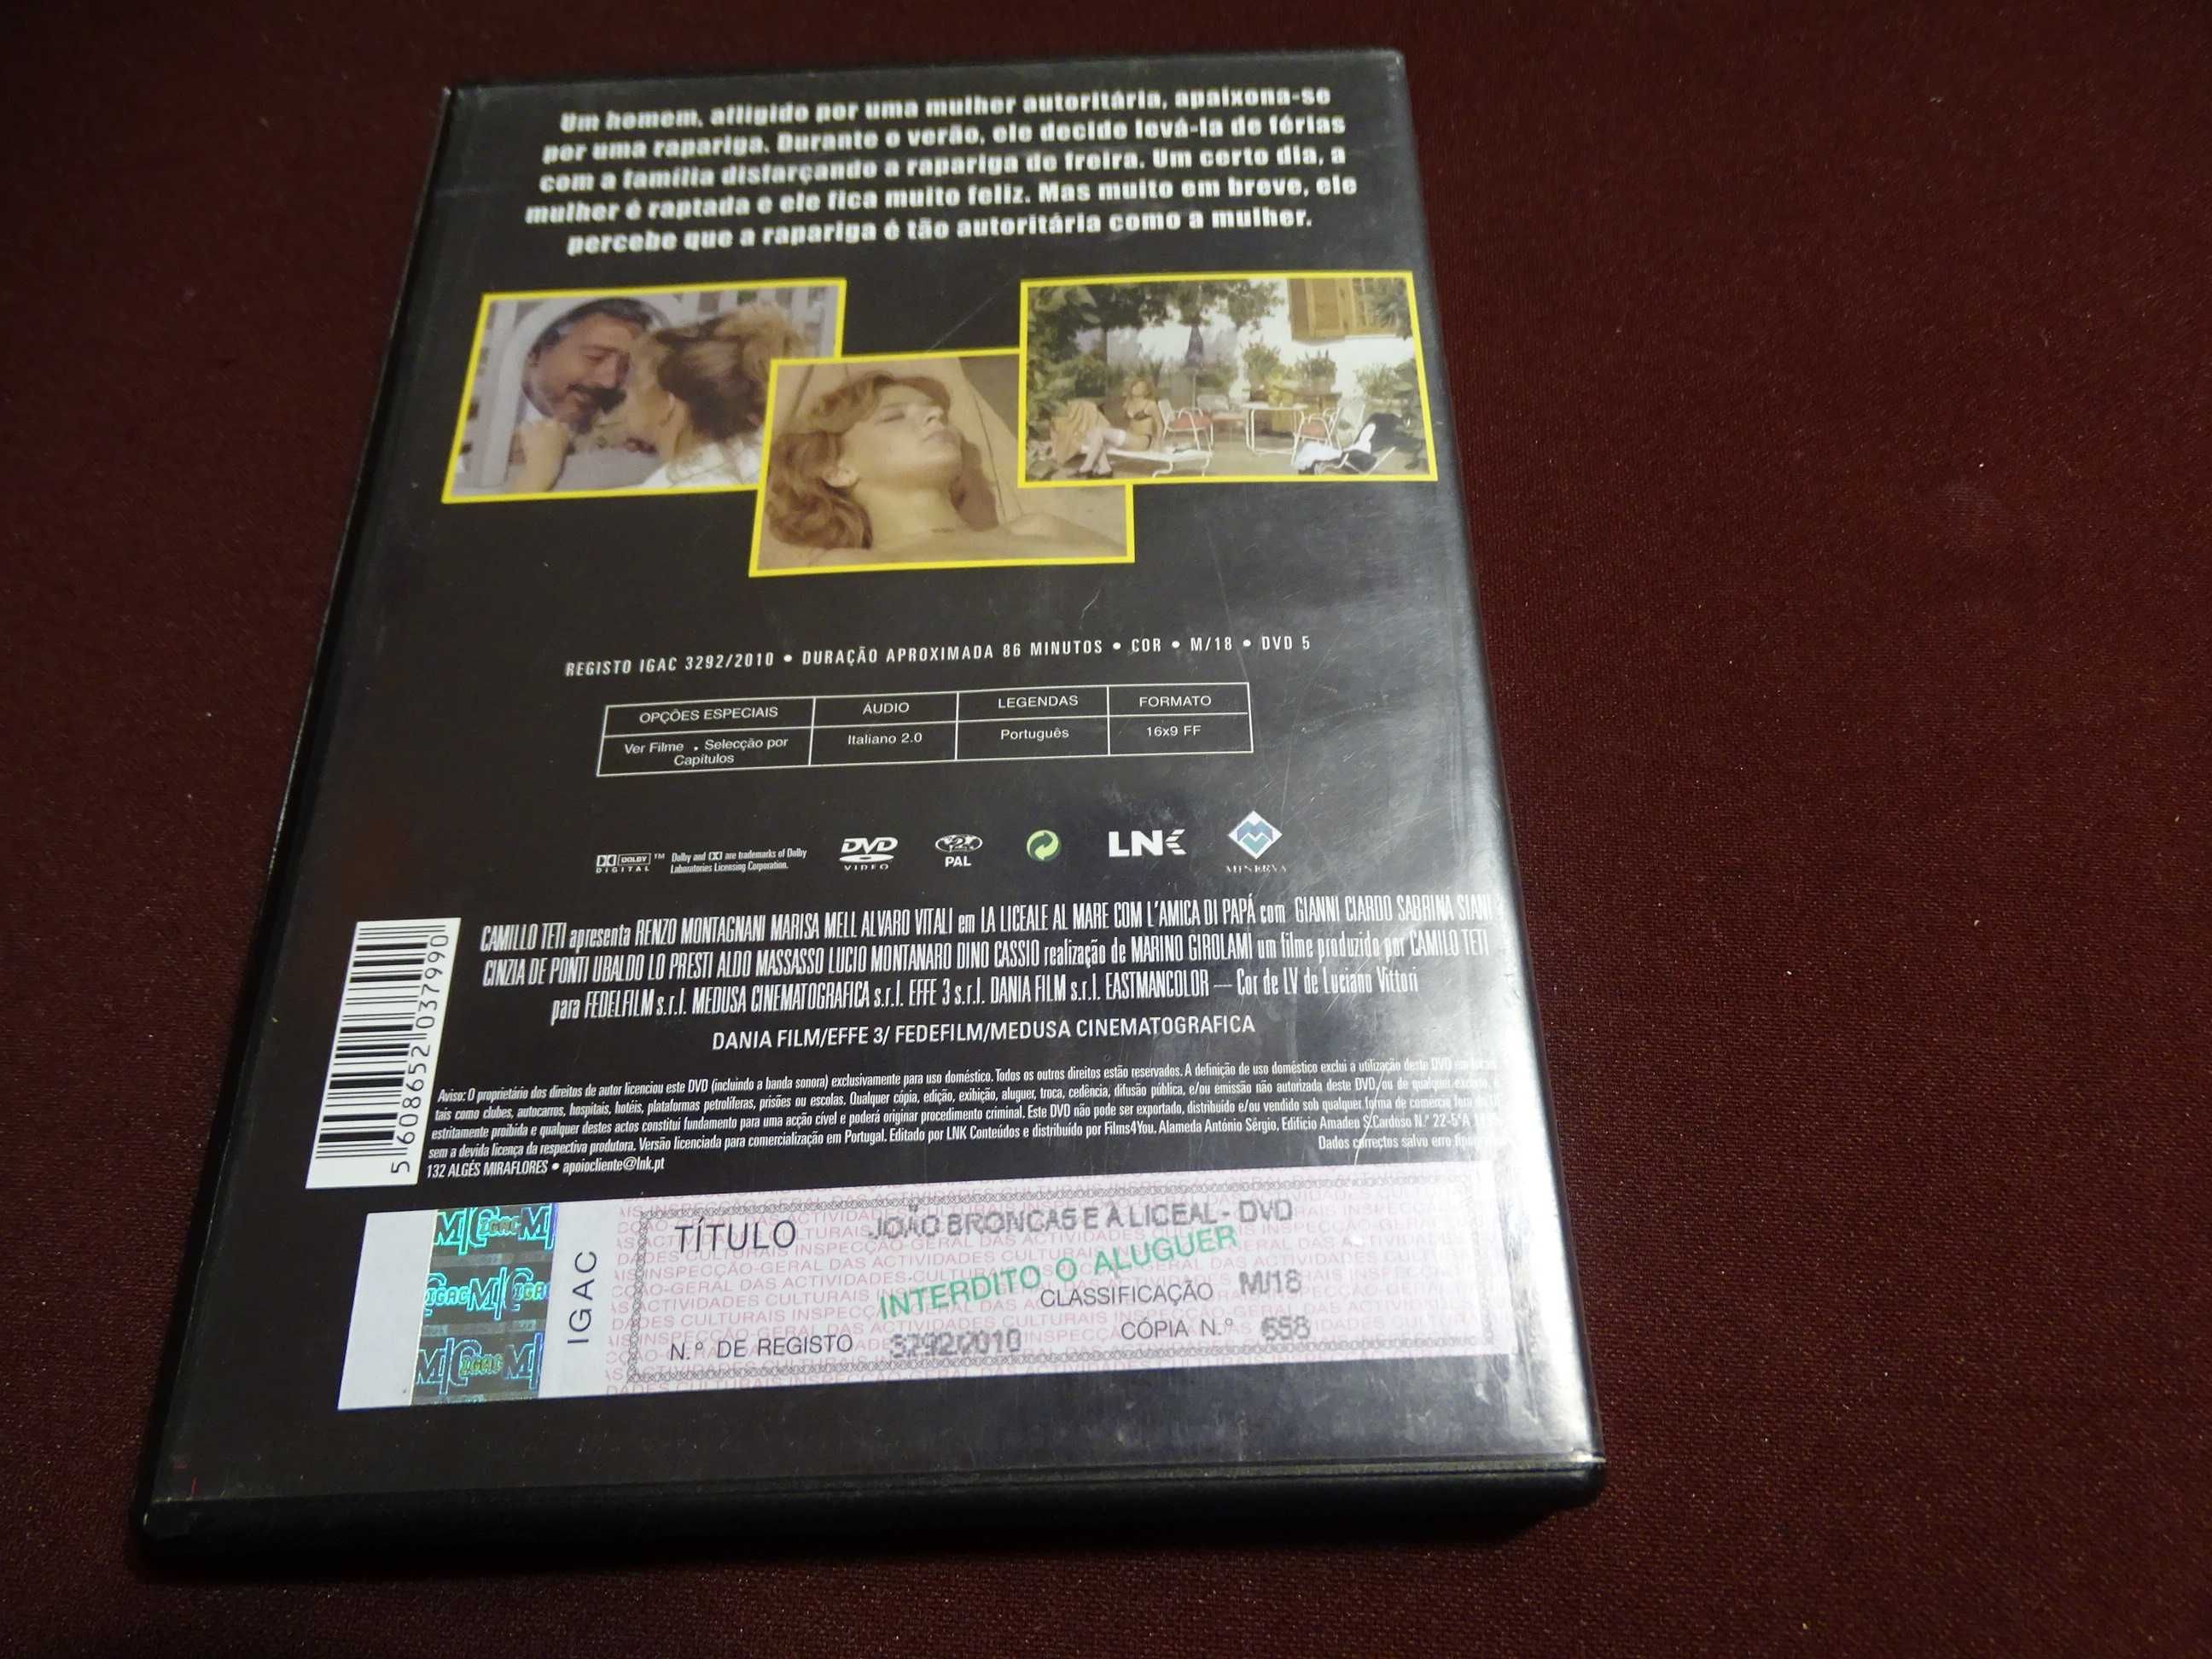 DVD-João Broncas e a Liceal